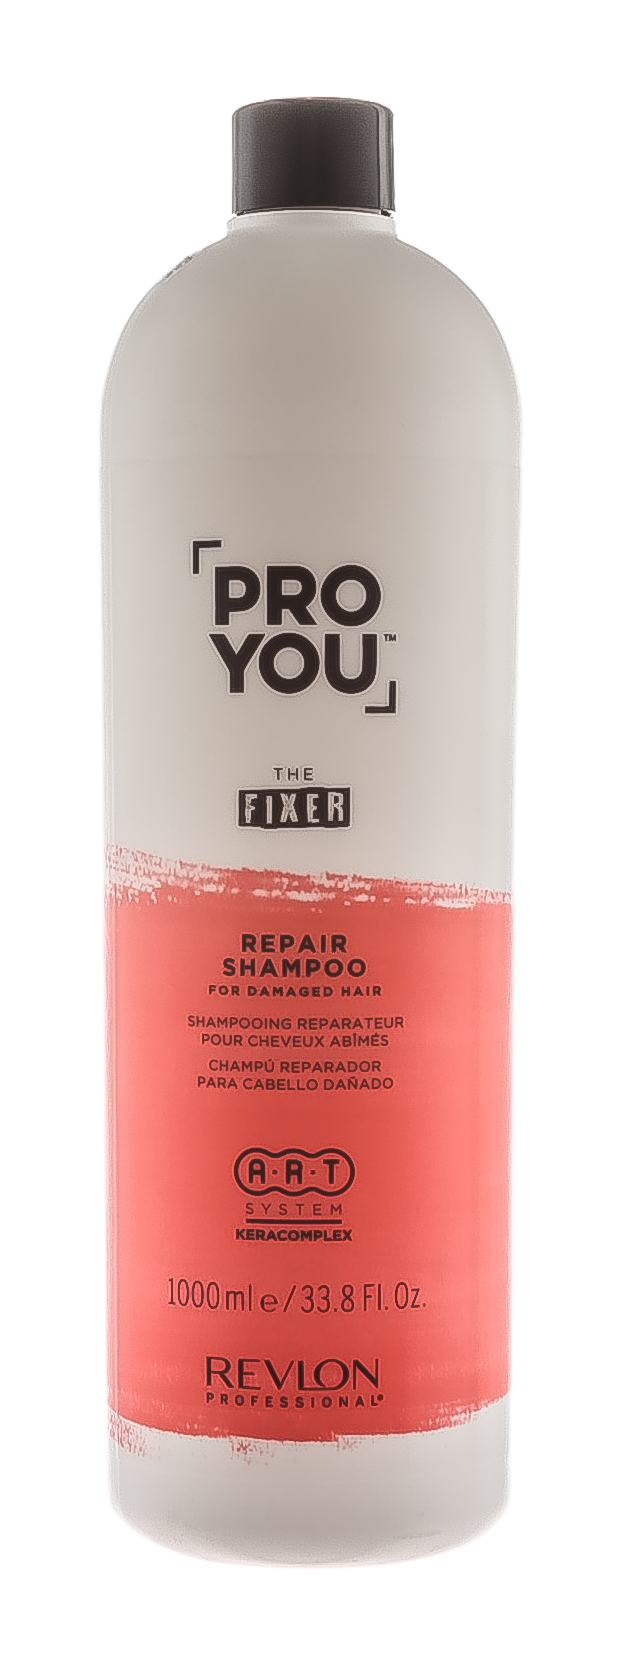 Купить Revlon Professional Шампунь восстанавливающий для поврежденных волос Repair Shampoo, 1000 мл (Revlon Professional, Pro You), США